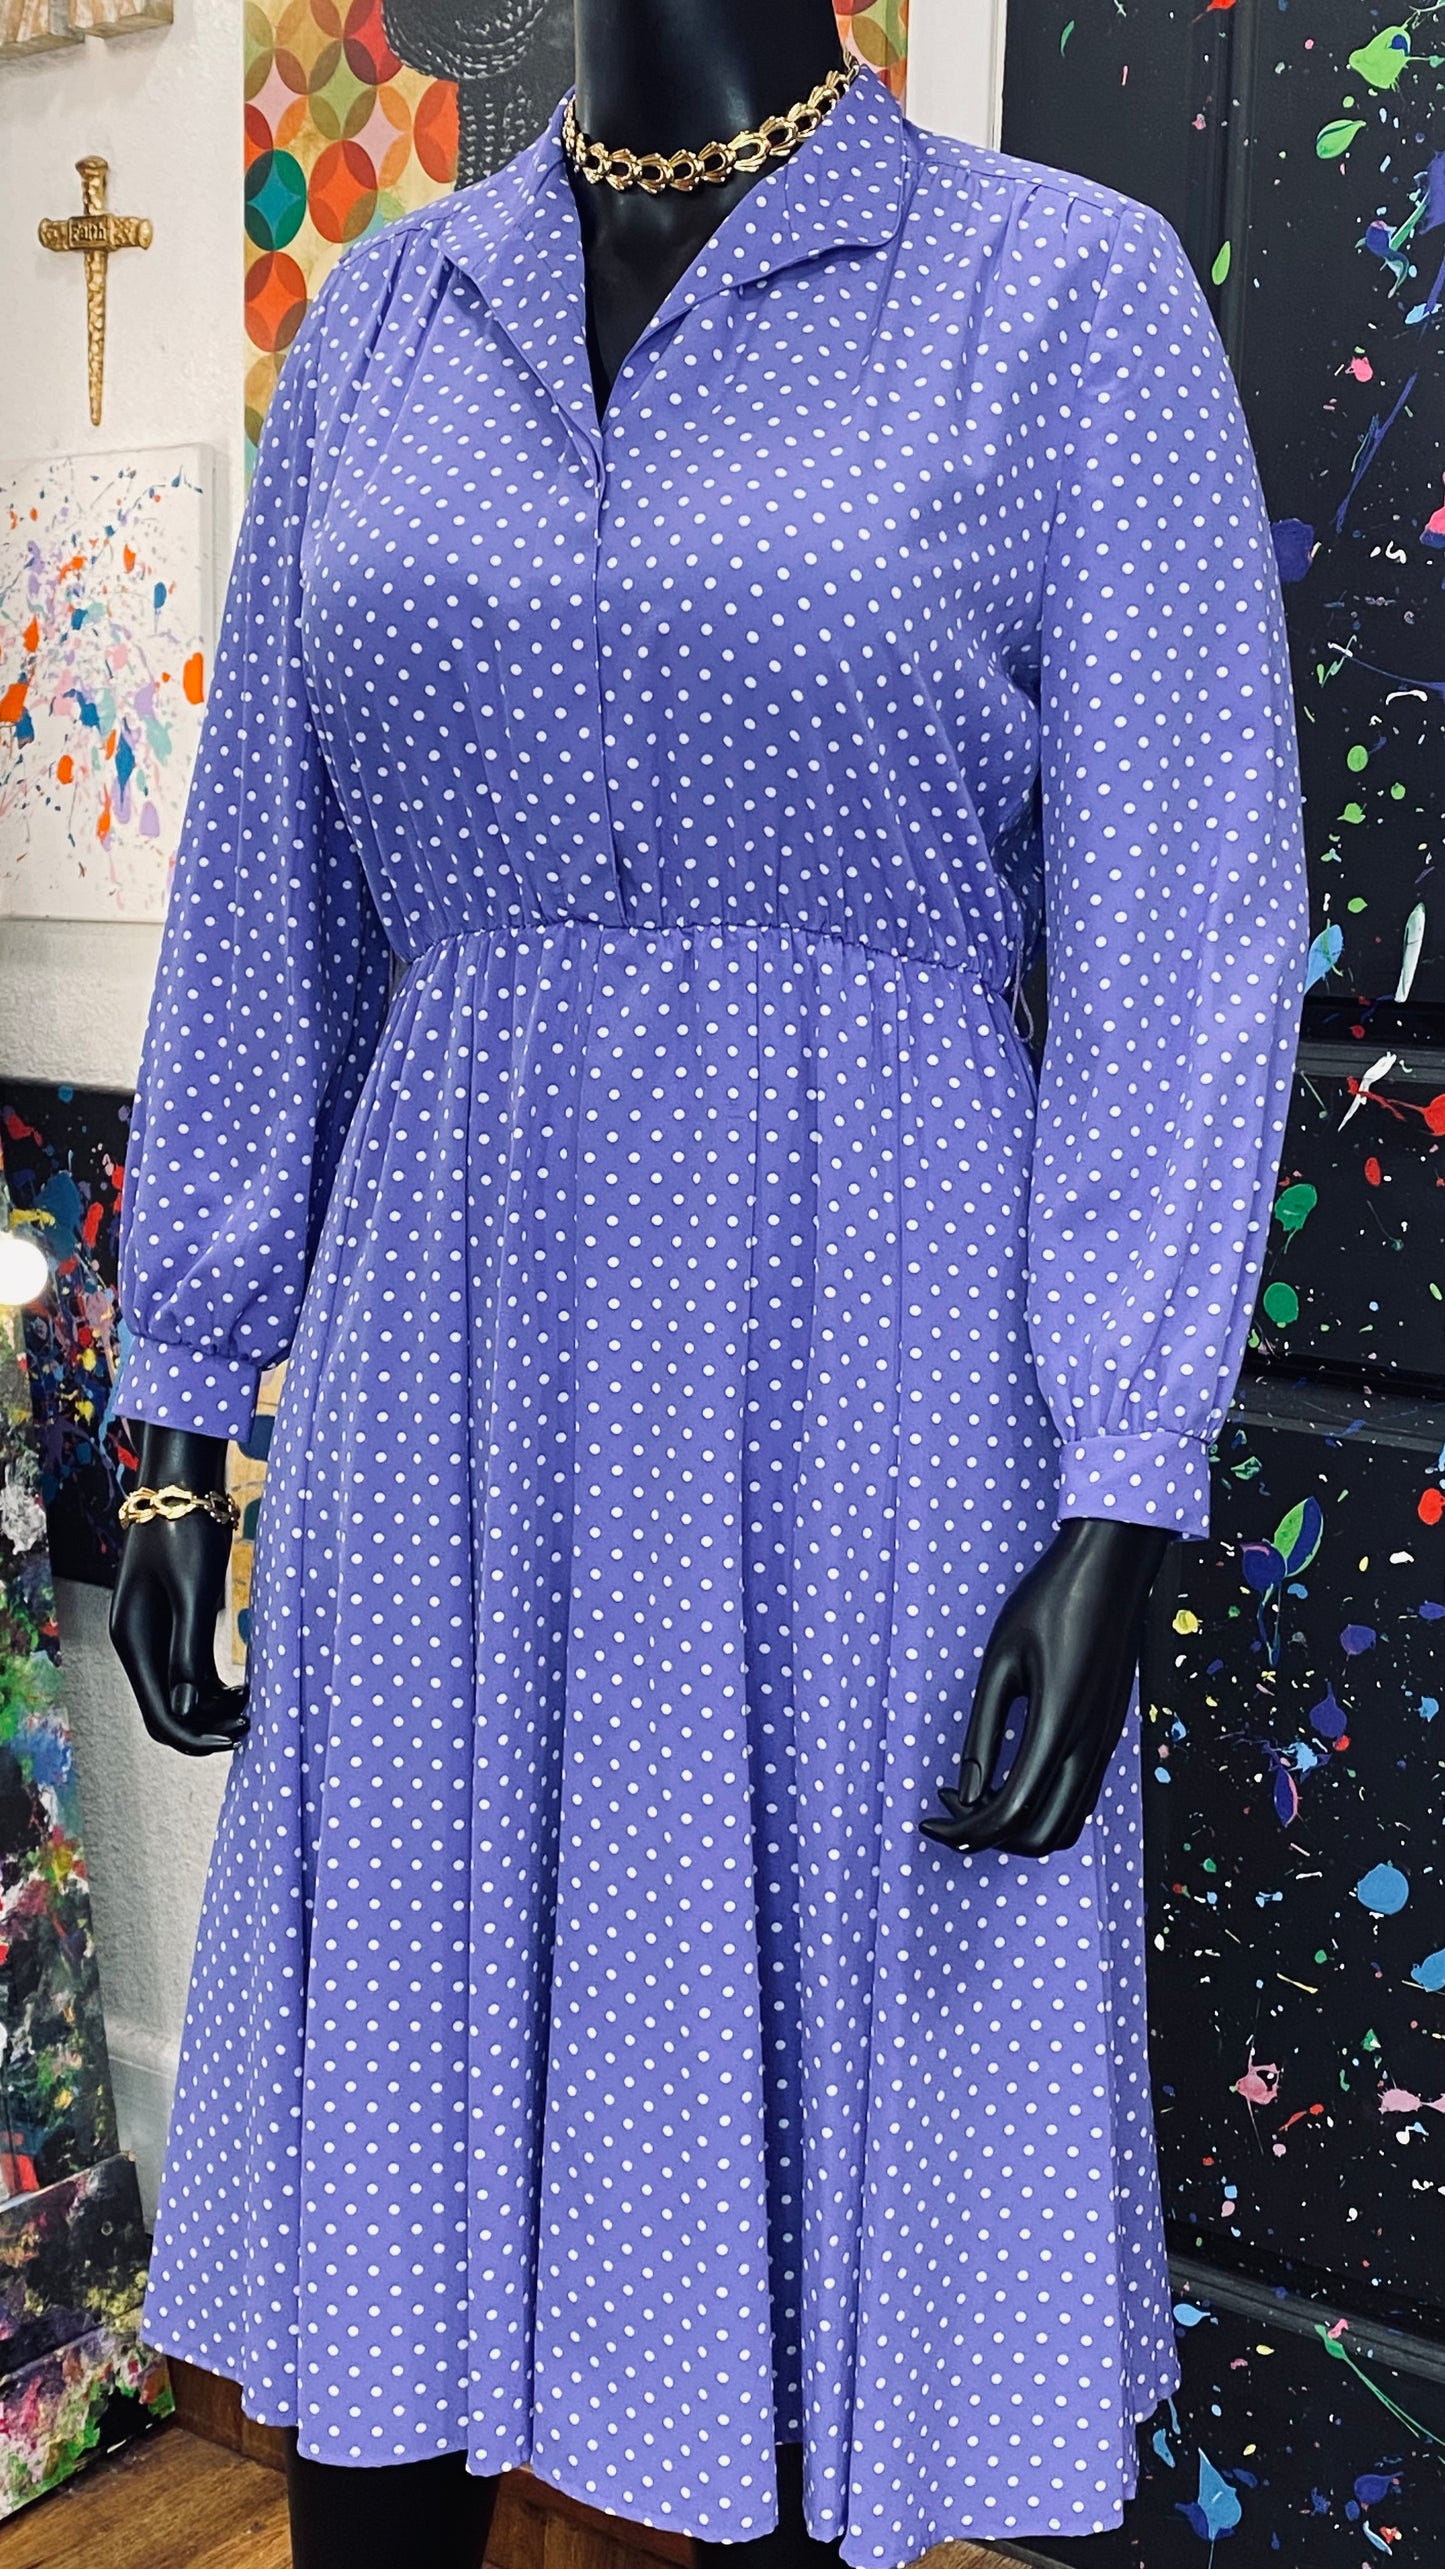 Vintage Blue Polka Dot Dress